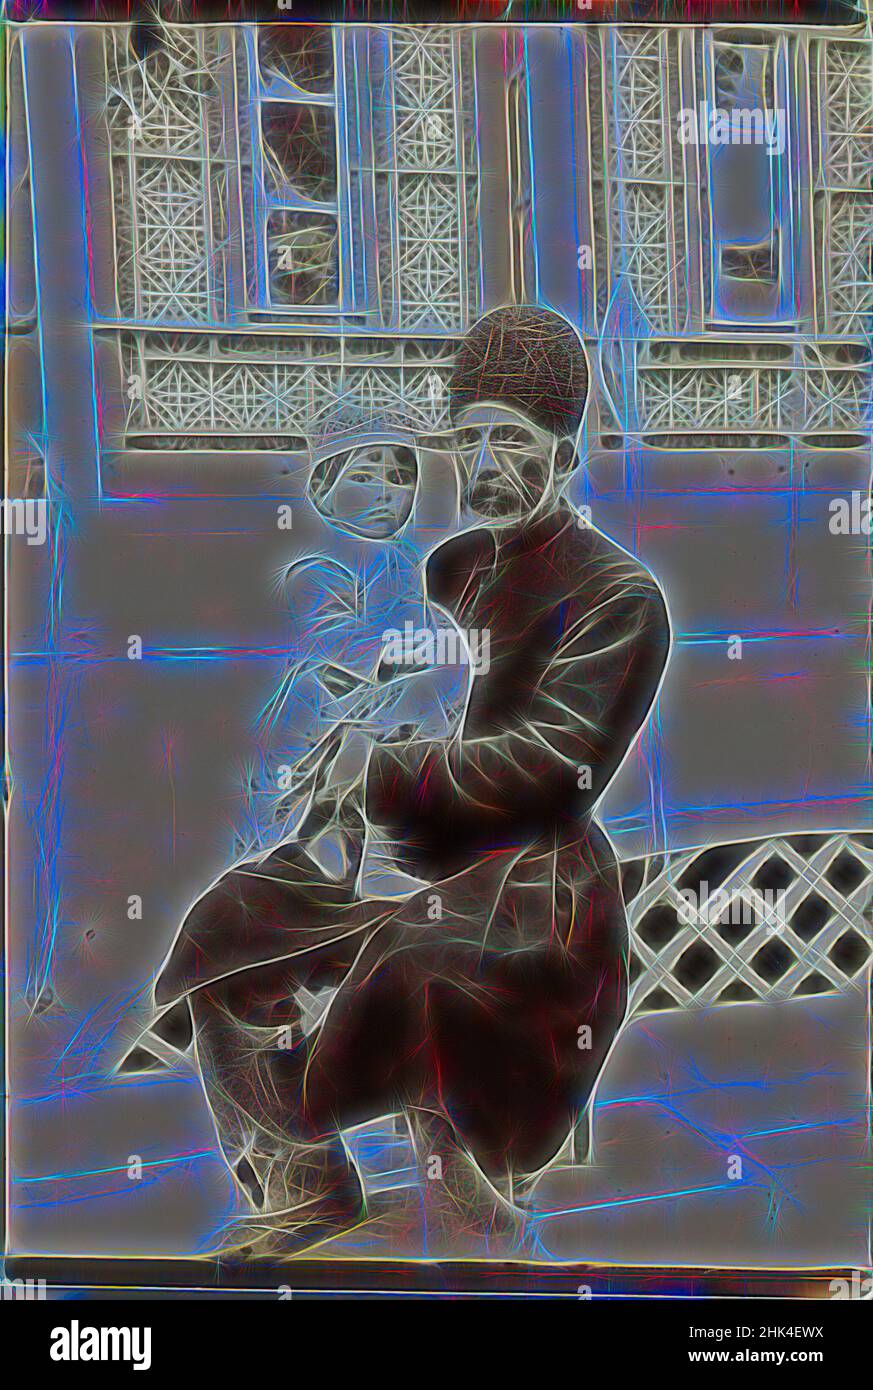 Inspiriert von Dowlet Morad Bek & Child, Torkmen, einer von 274 Vintage-Fotografien, Gelatin-Silberdruckpapier, Ende 19th-Anfang 20th. Jahrhundert, Qajar, Qajar-Zeit, 7 1/8 x 4 13/16 Zoll, 18,1 x 12,2 cm, historisch, iran, iranisch, islamisch, persien, persisch, qajar, sitzend, neu erfunden von Artotop. Klassische Kunst neu erfunden mit einem modernen Twist. Design von warmen fröhlichen Leuchten der Helligkeit und Lichtstrahl Strahlkraft. Fotografie inspiriert von Surrealismus und Futurismus, umarmt dynamische Energie der modernen Technologie, Bewegung, Geschwindigkeit und Kultur zu revolutionieren Stockfoto